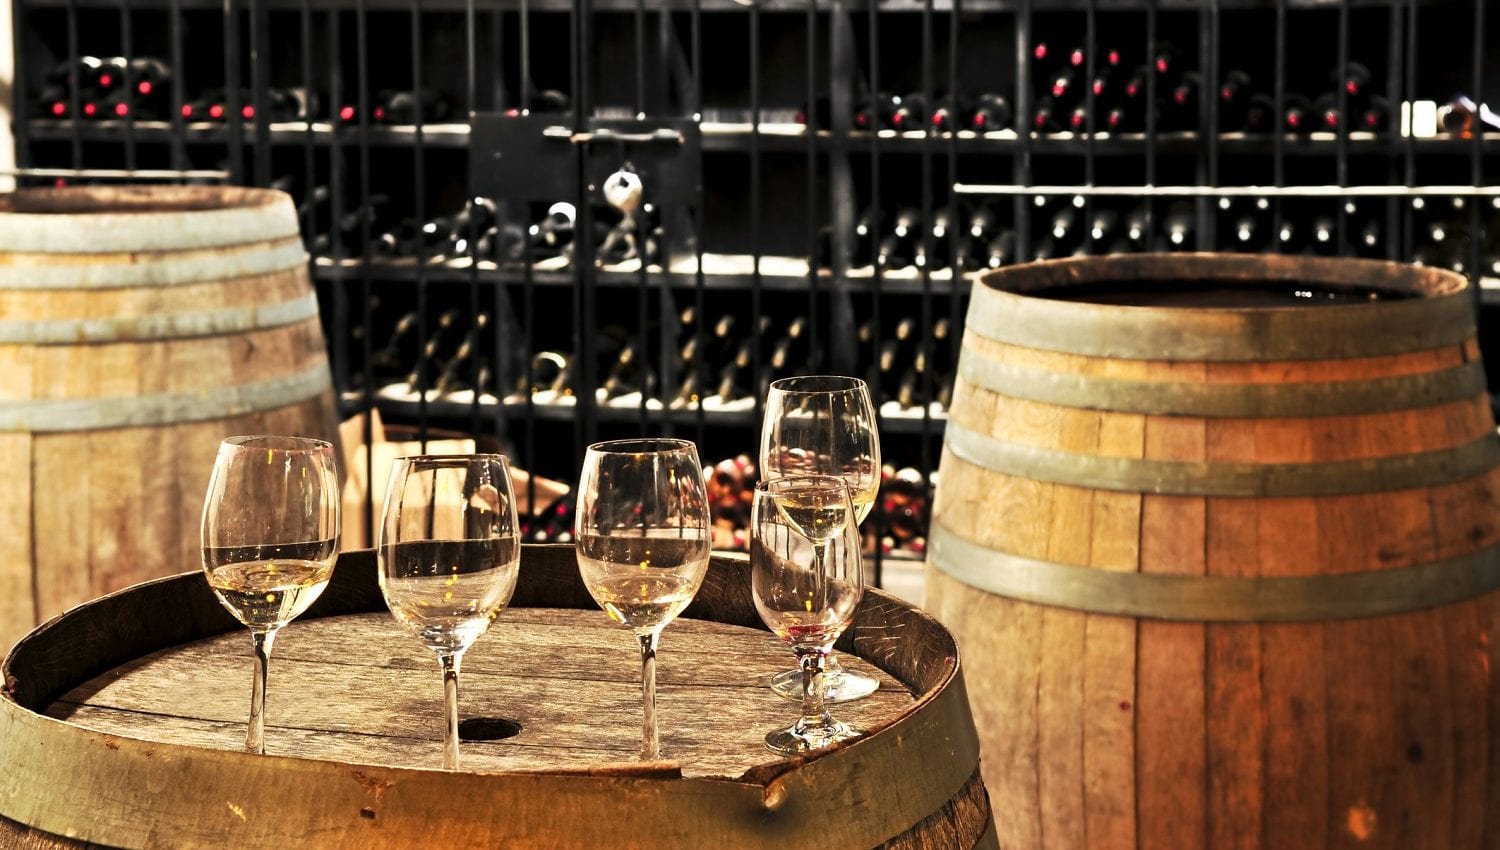 Wine glasses and barrels